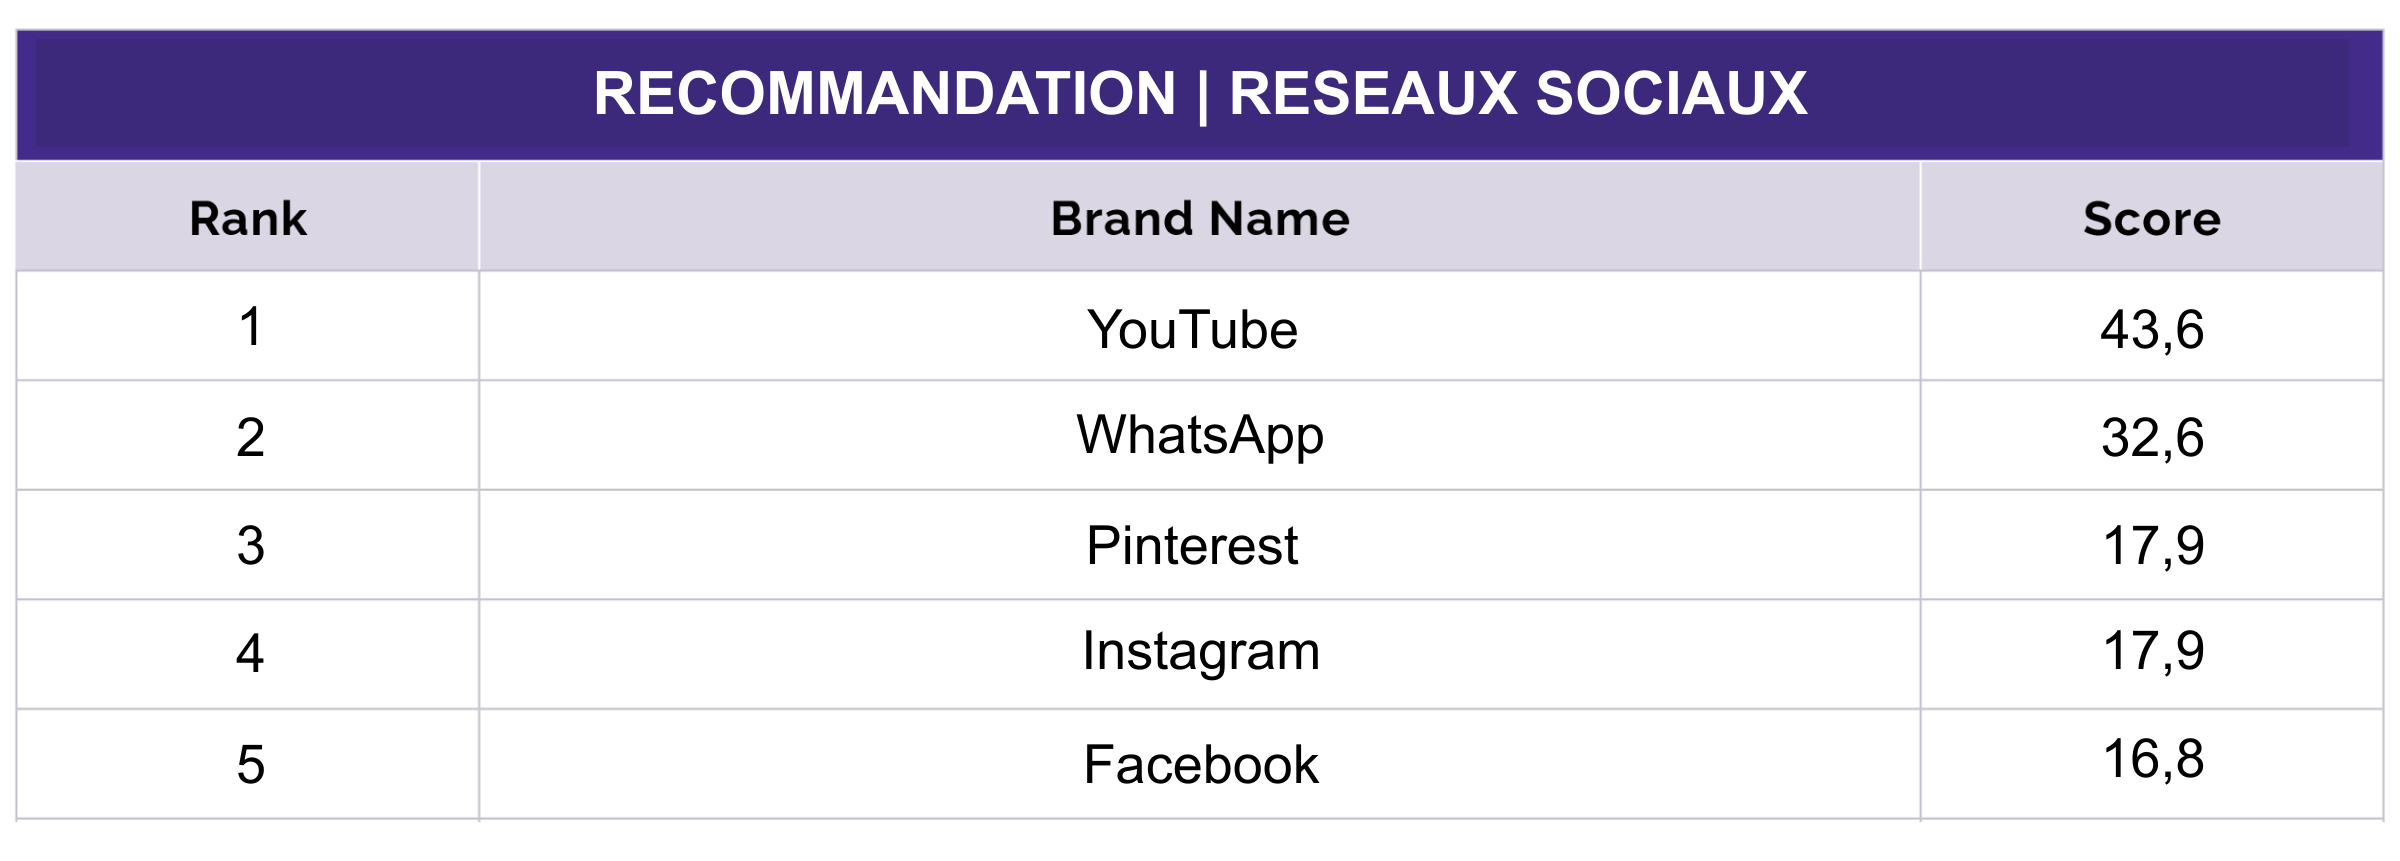 Le Top 5 des réseaux sociaux les plus recommandés en France en 2021.  (YouGov)